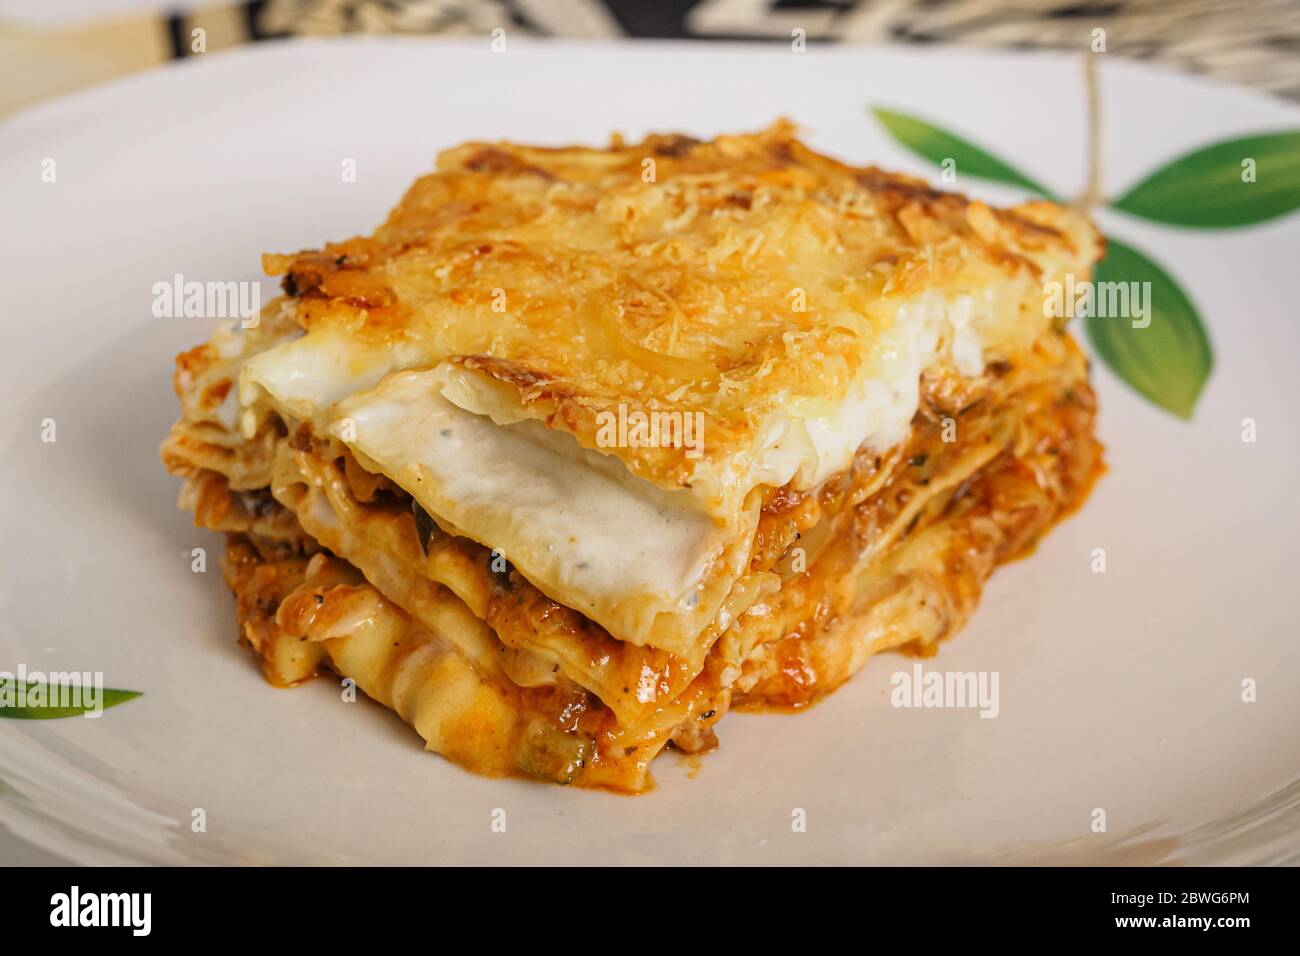 Porzione di lasagne italiane farcite con carne e verdure, cibo tipico italiano Foto Stock